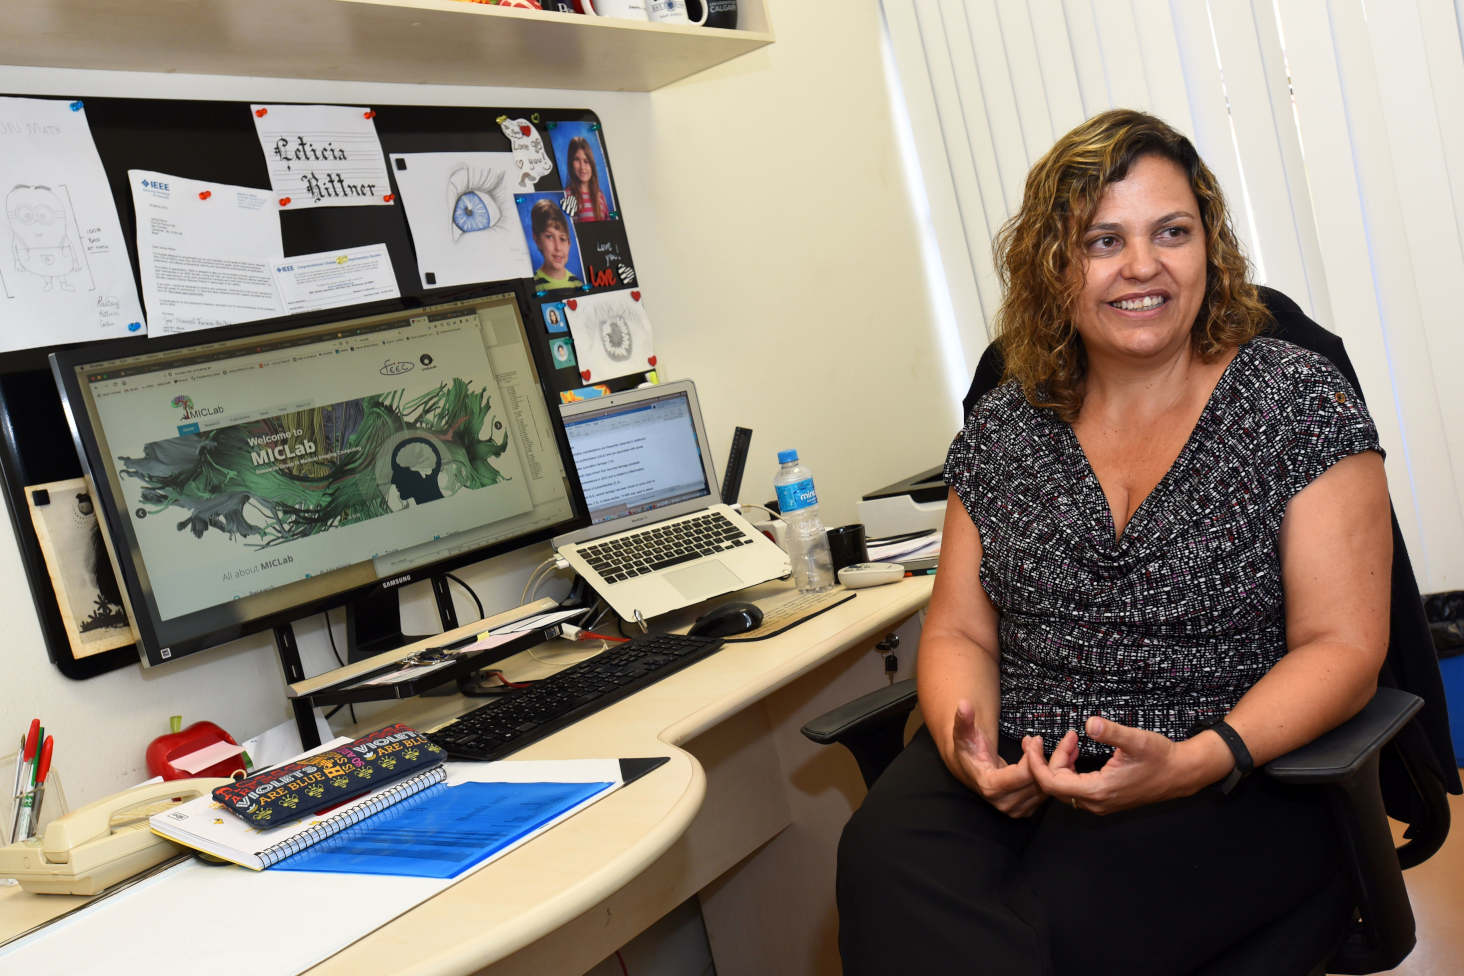 audiodescrição: fotografia colorida mostra professora Leticia sentada em frente ao computador durante uma entrevista